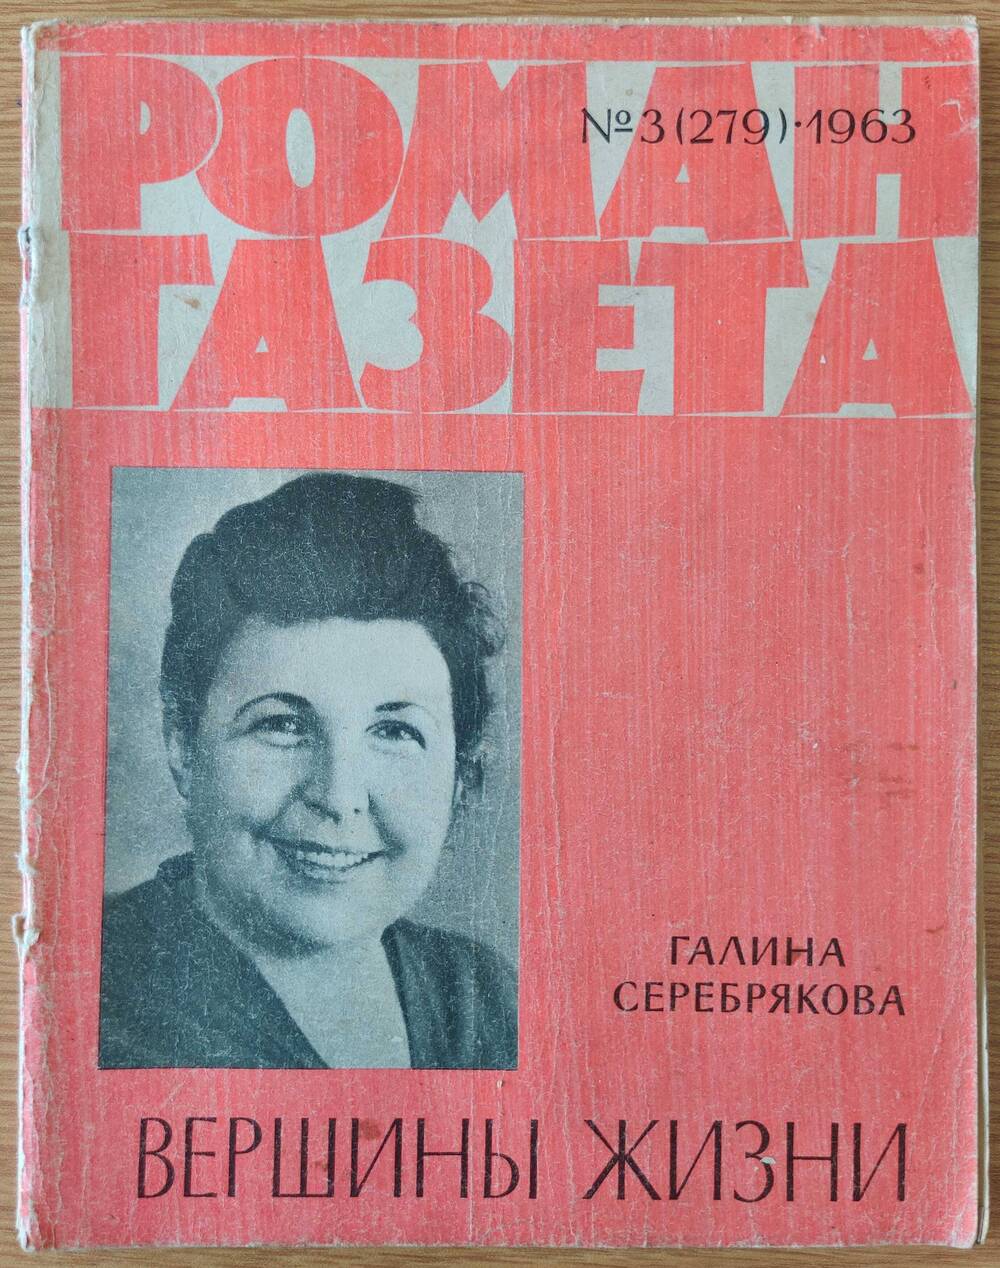 Журнал «Роман - Газета» №3 (279). 1963